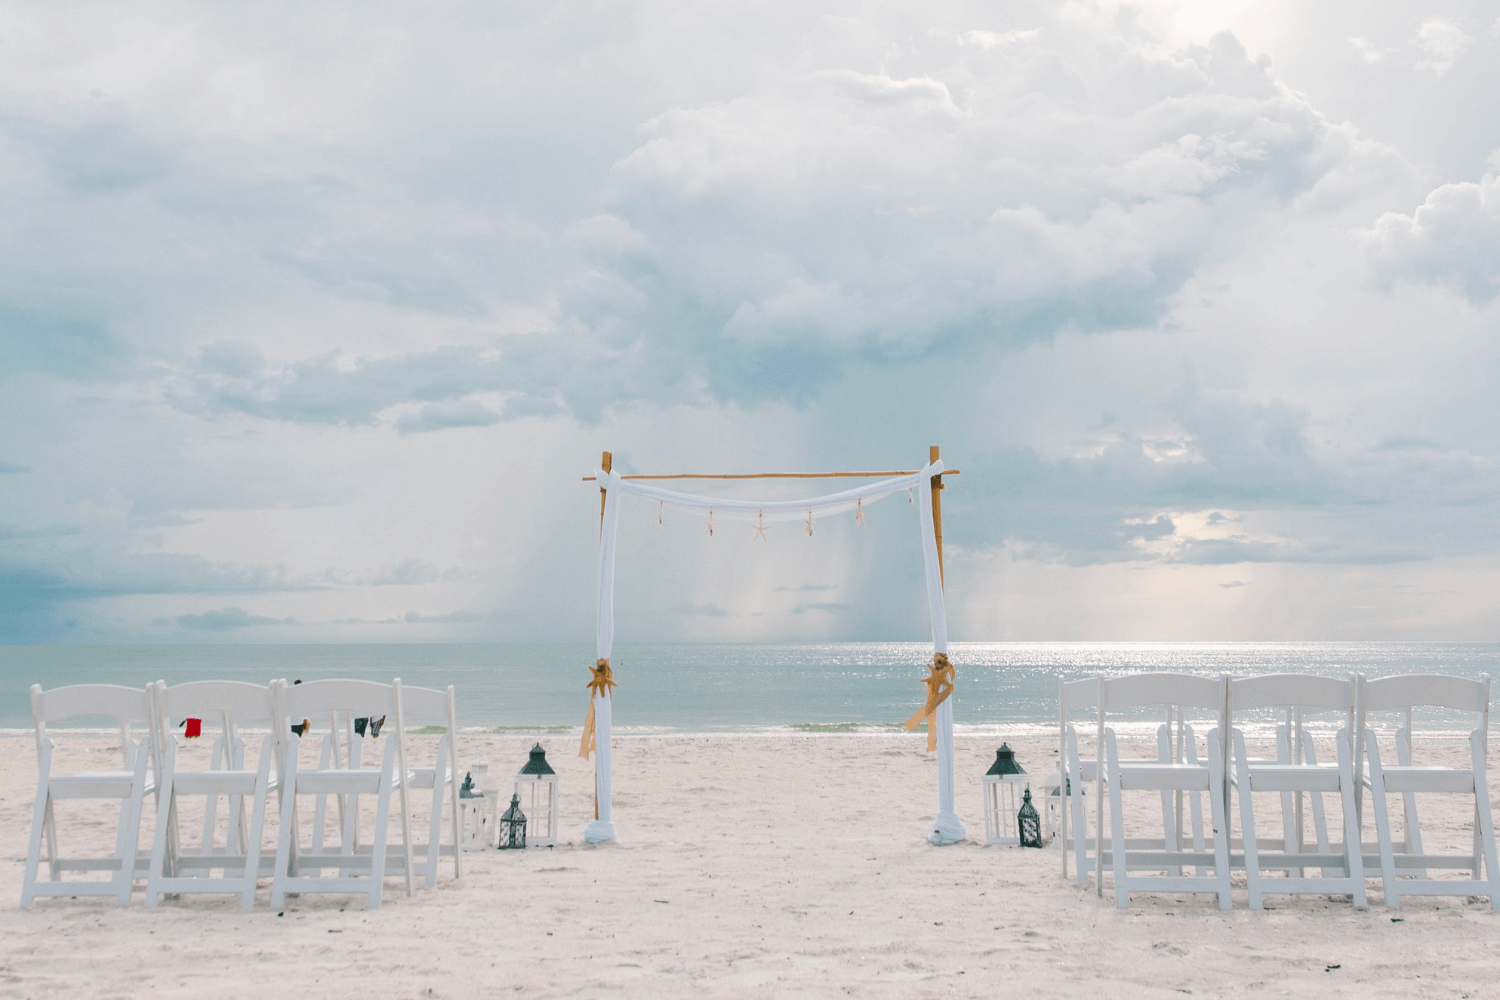 Une cérémonie de mariage sur la plage avec des chaises déposées en rang sur le sable et une arche de mariage agrémentée d’un ruban blanc.